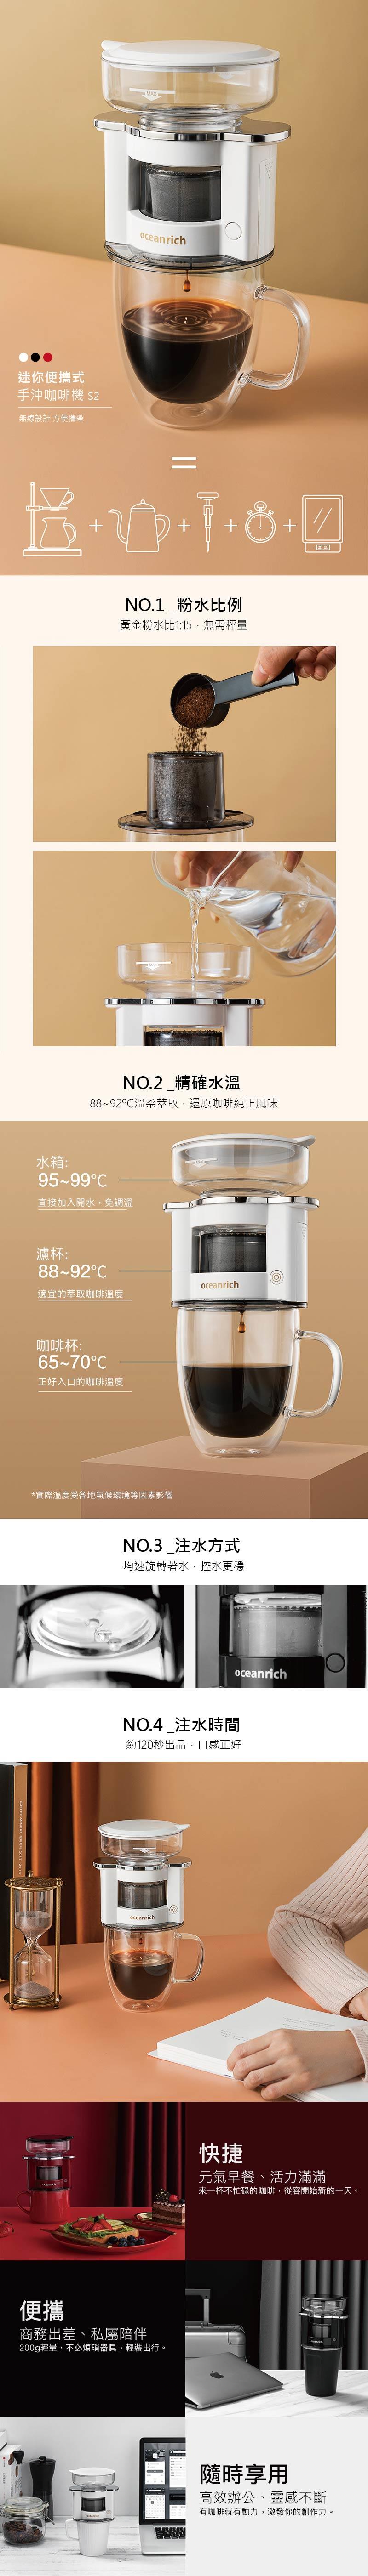 【歐新力奇】150ml自動旋轉咖啡機